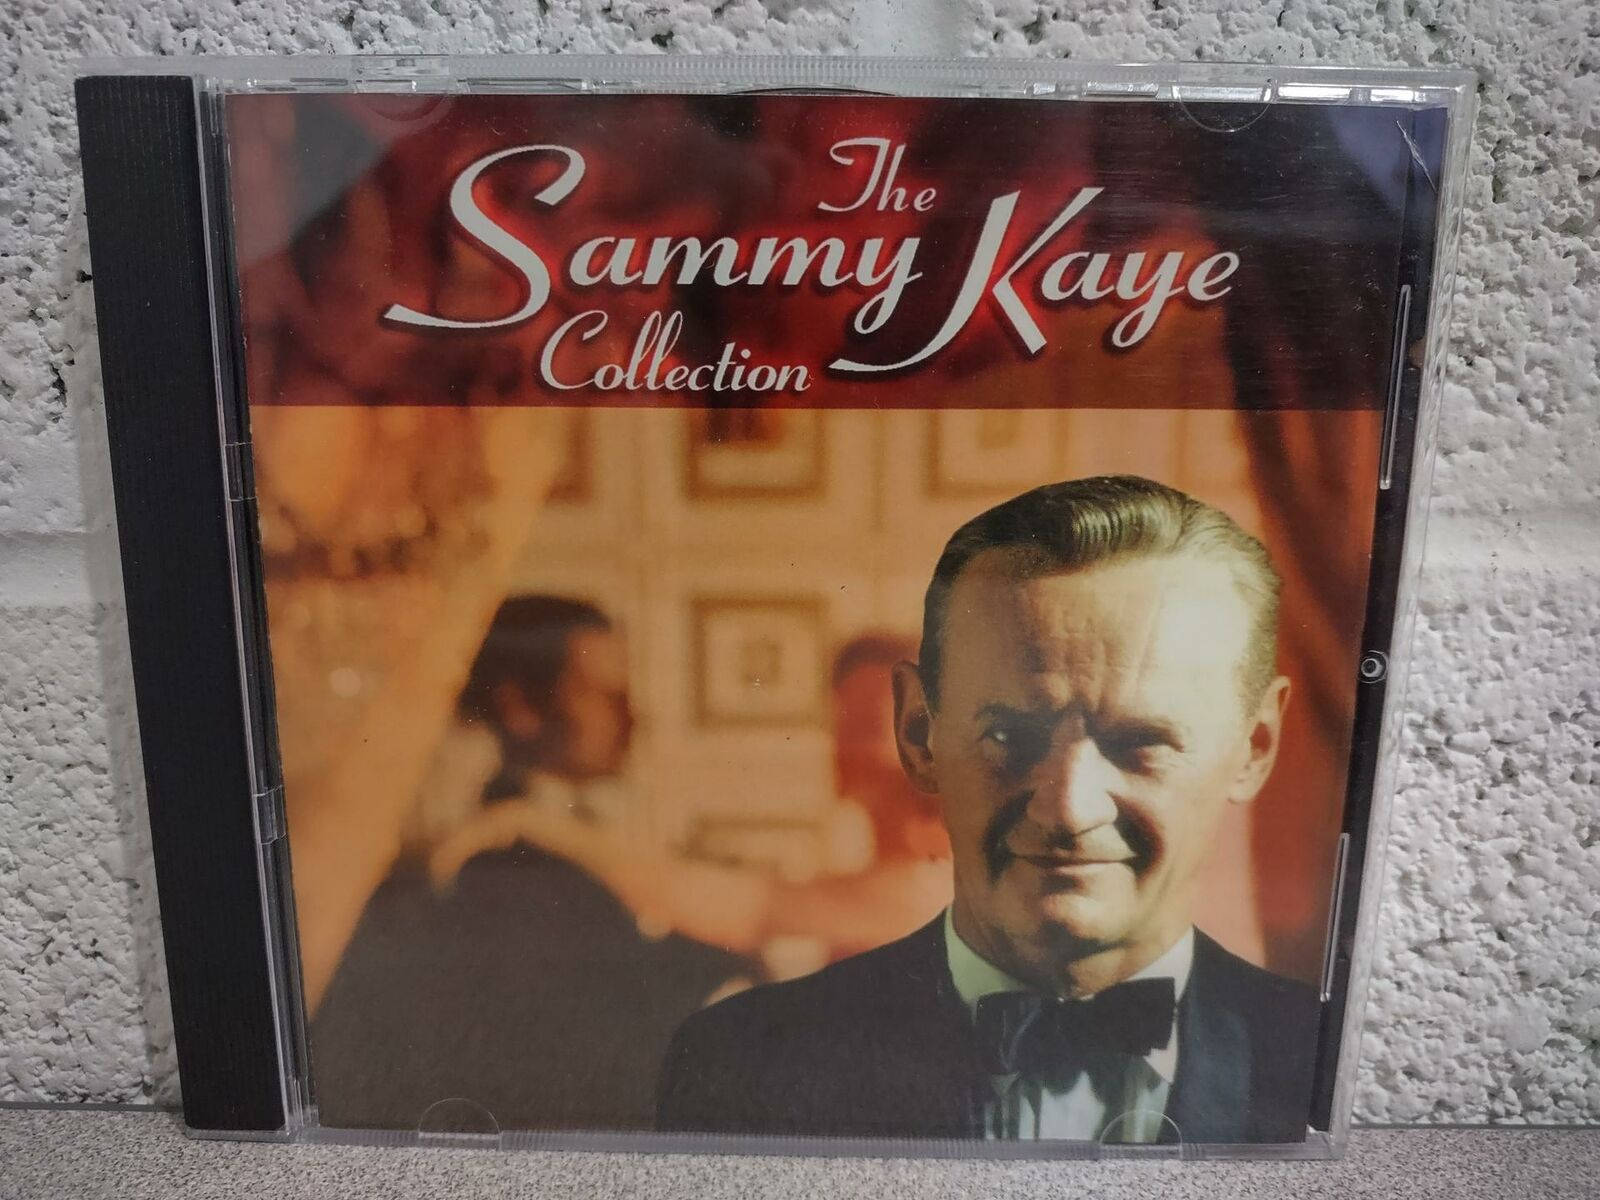 Diesammy Kaye Collection Cd-album Wallpaper